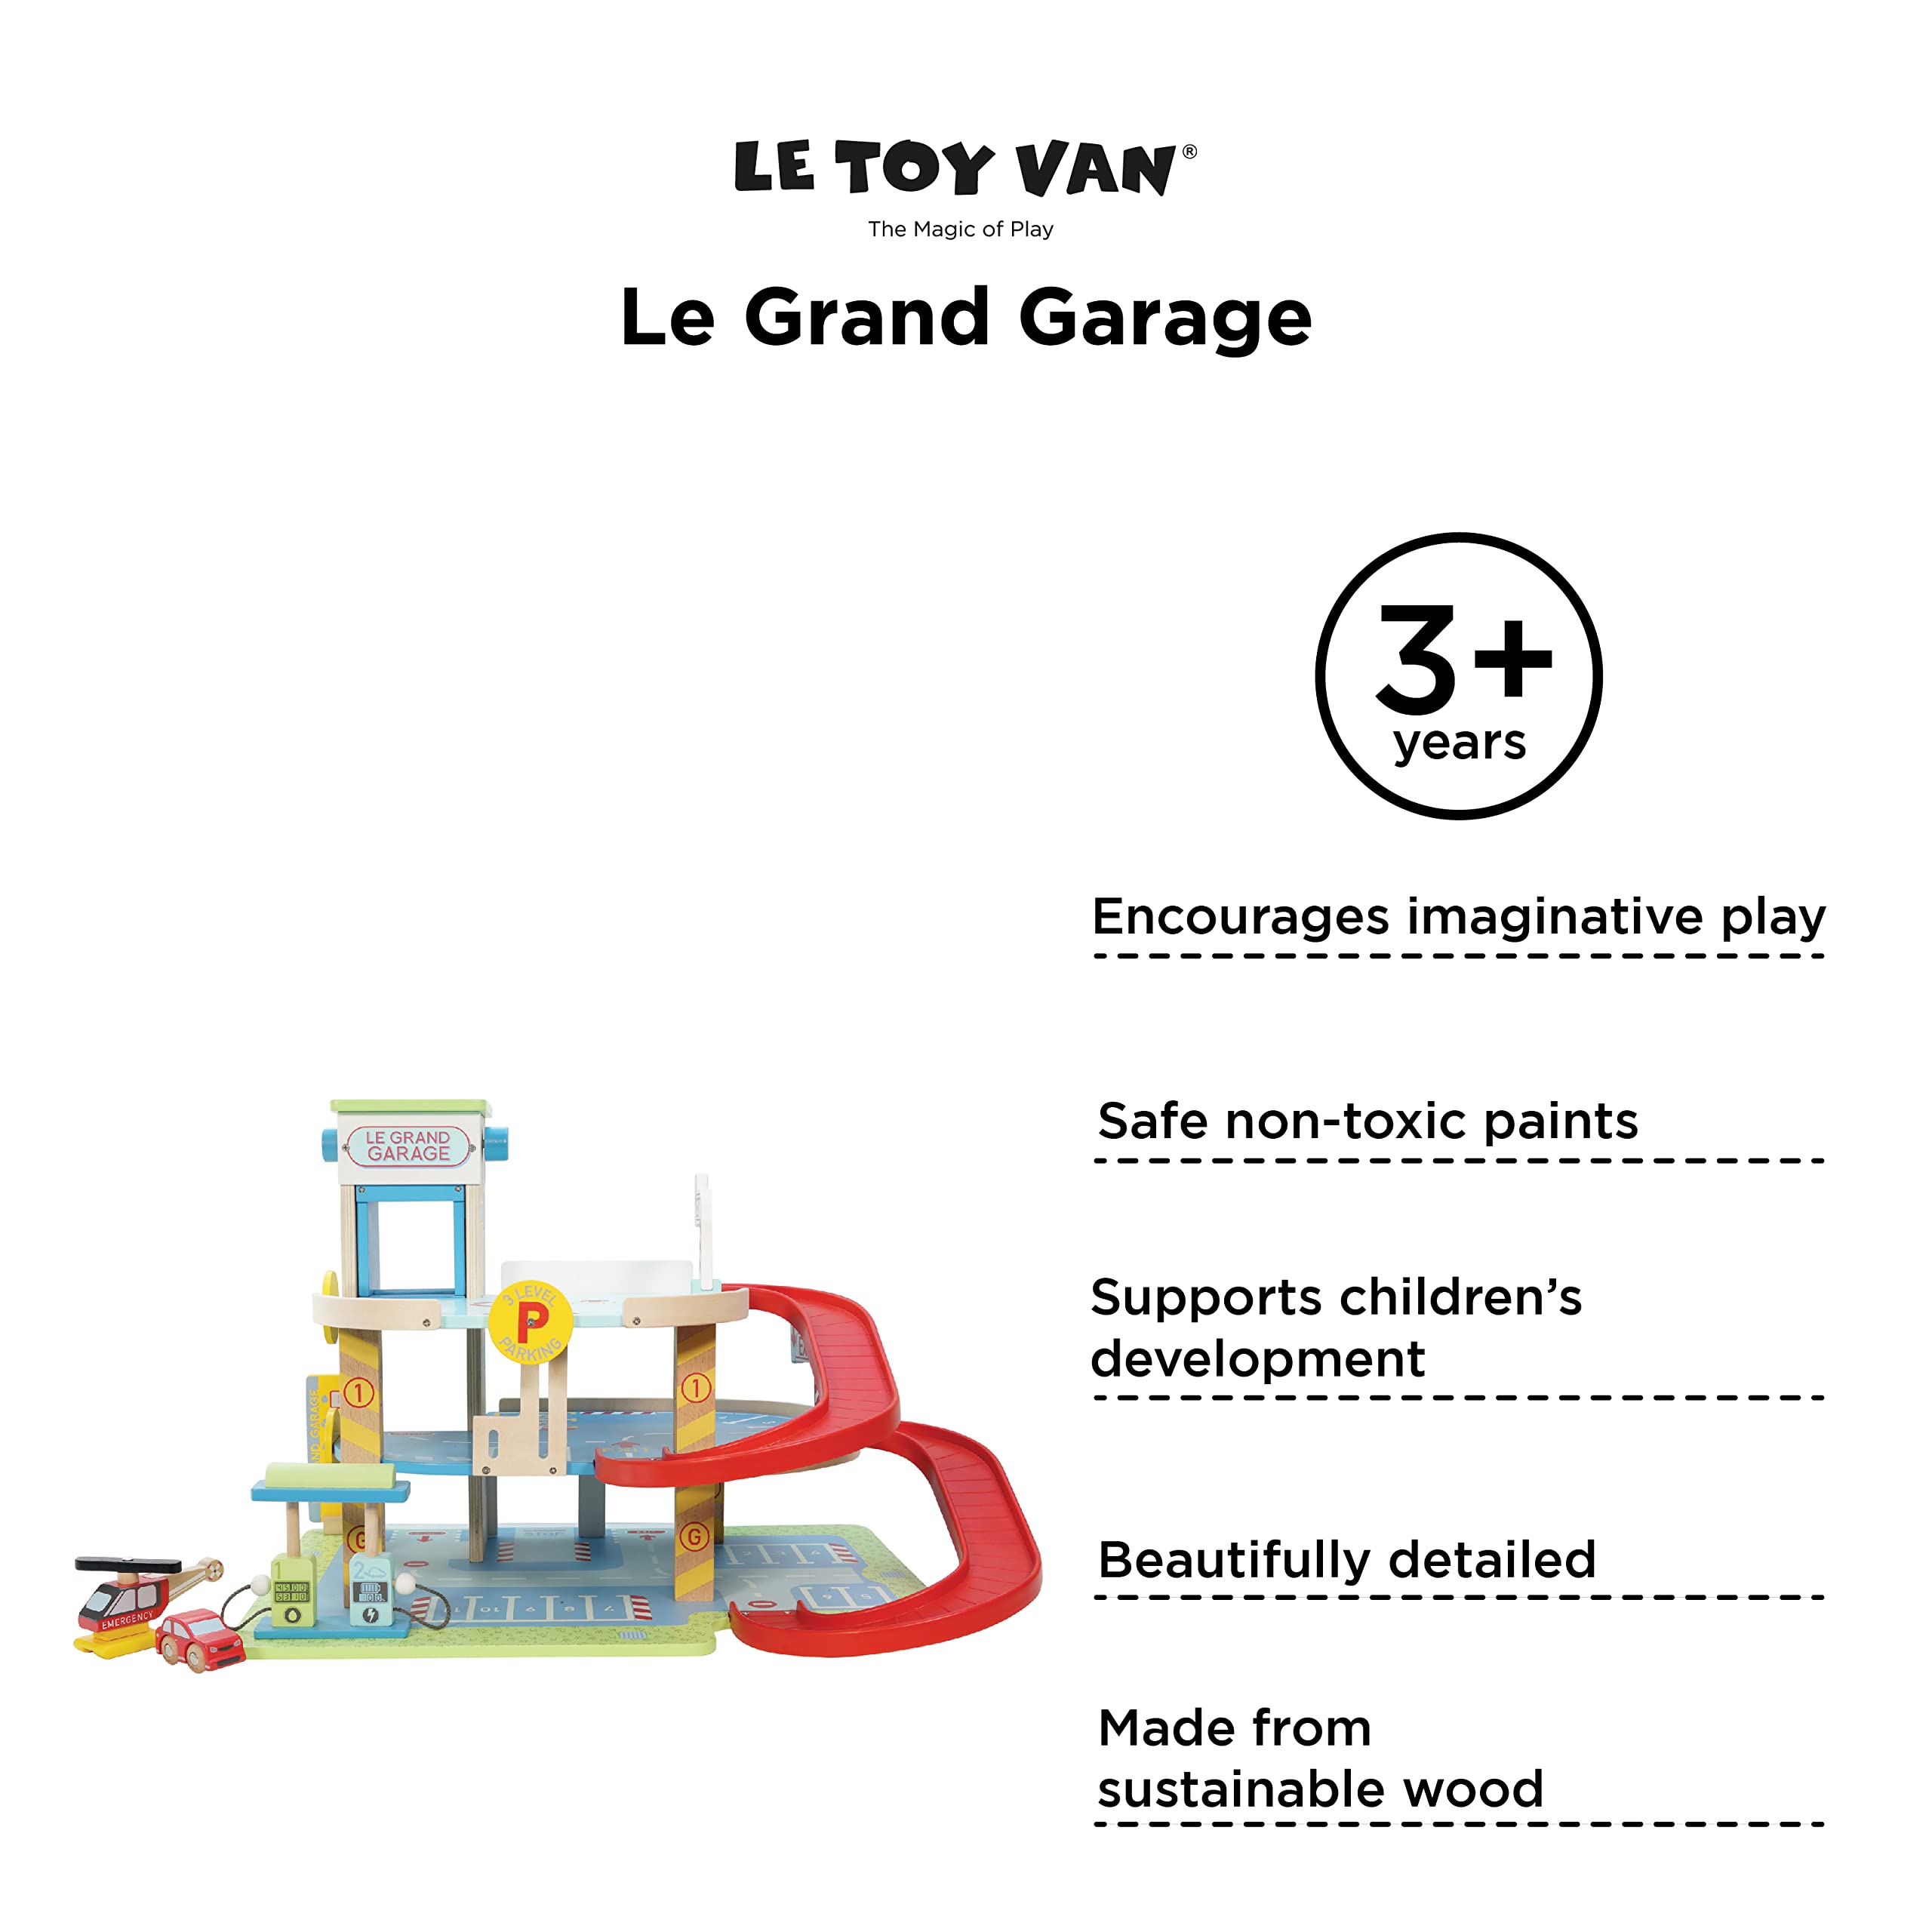 Le Toy Van Motors, Planes & Garages, Le Grande Garage